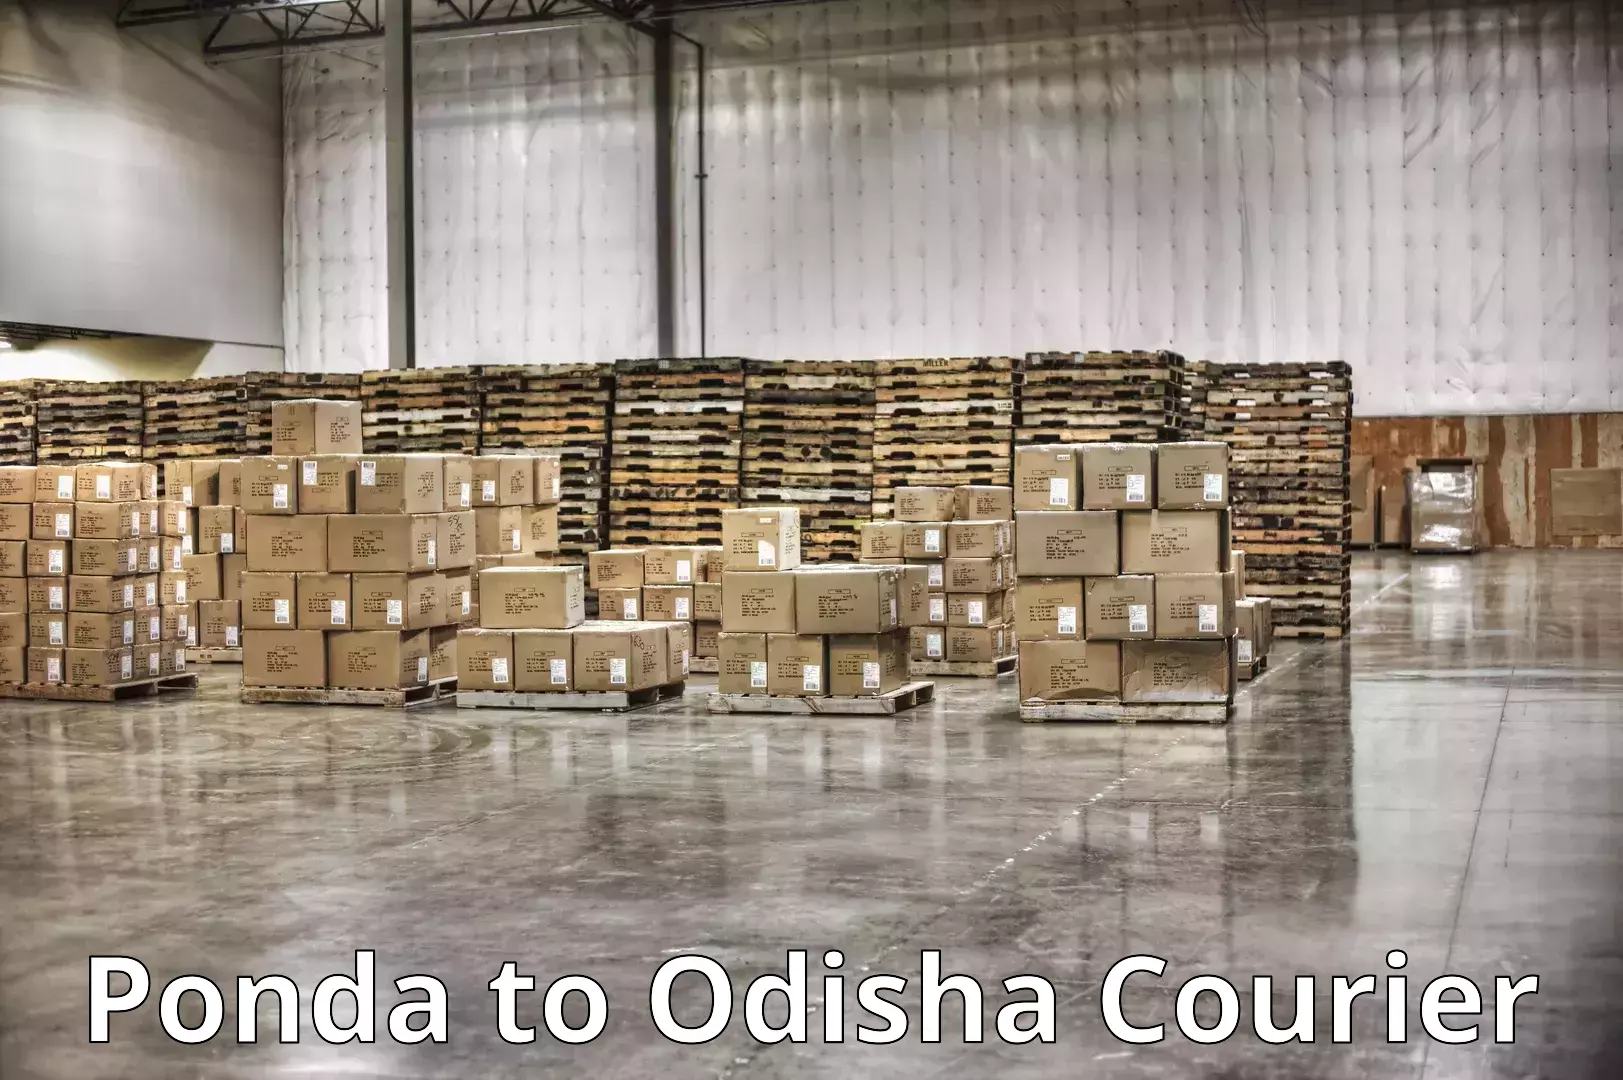 Furniture transport experts Ponda to Asika